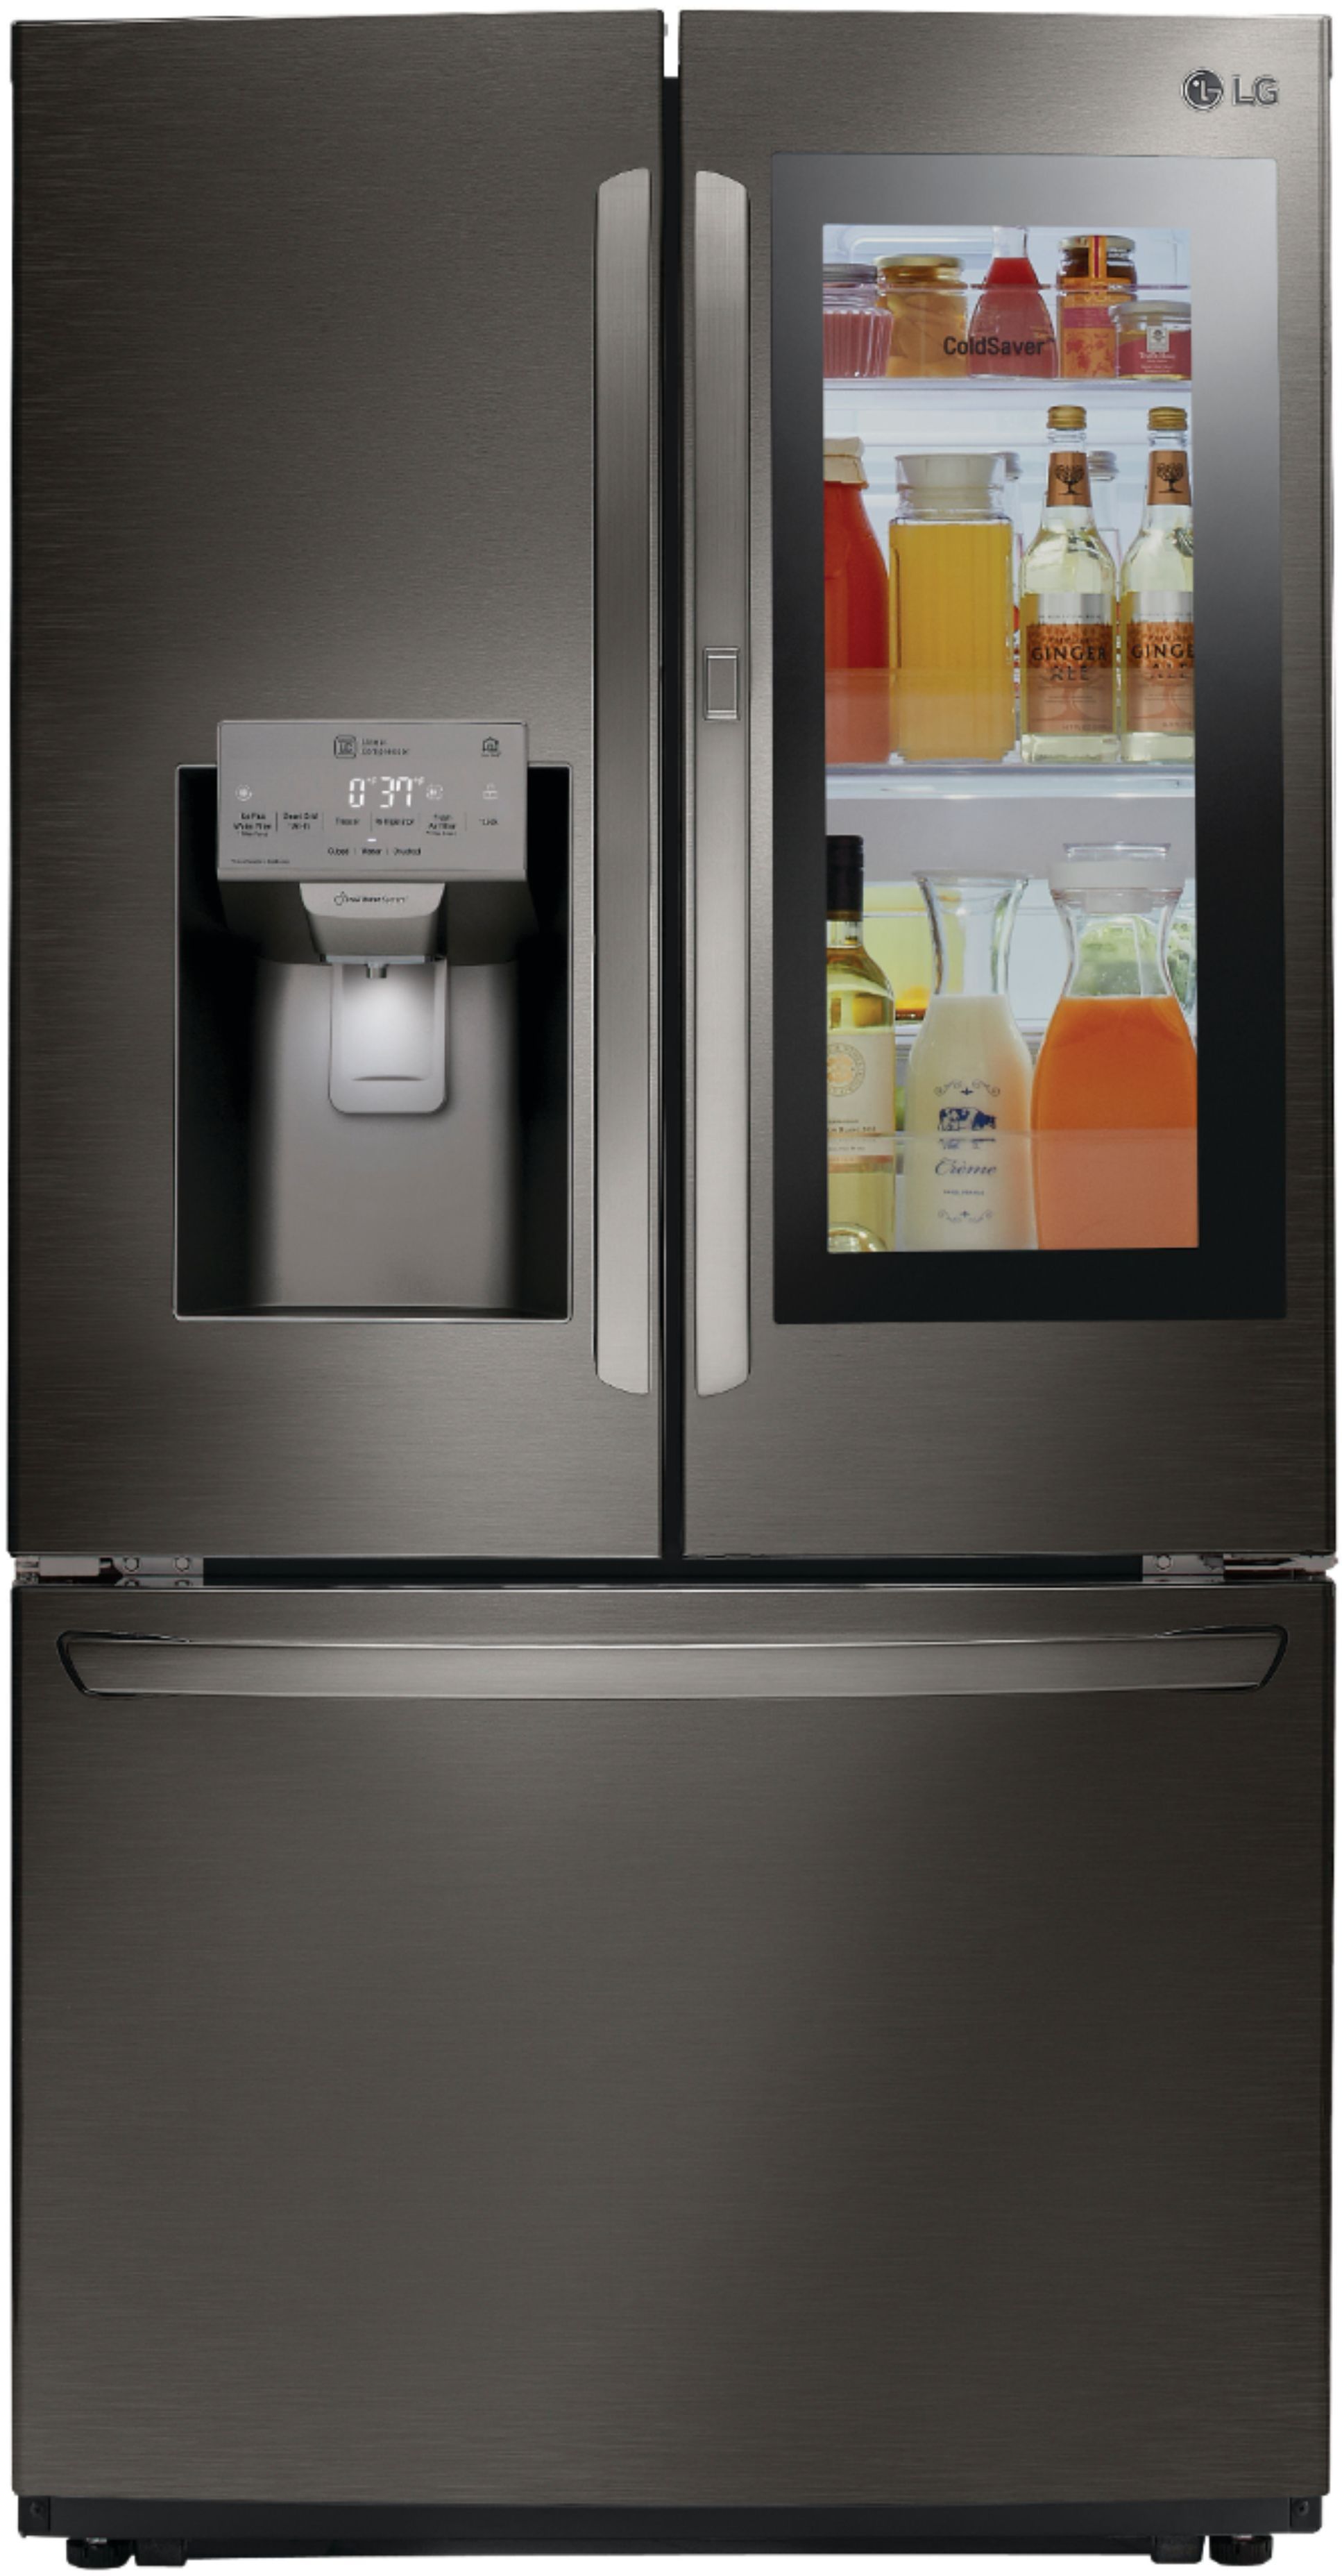 LG InstaView Counter-Depth Refrigerator Review